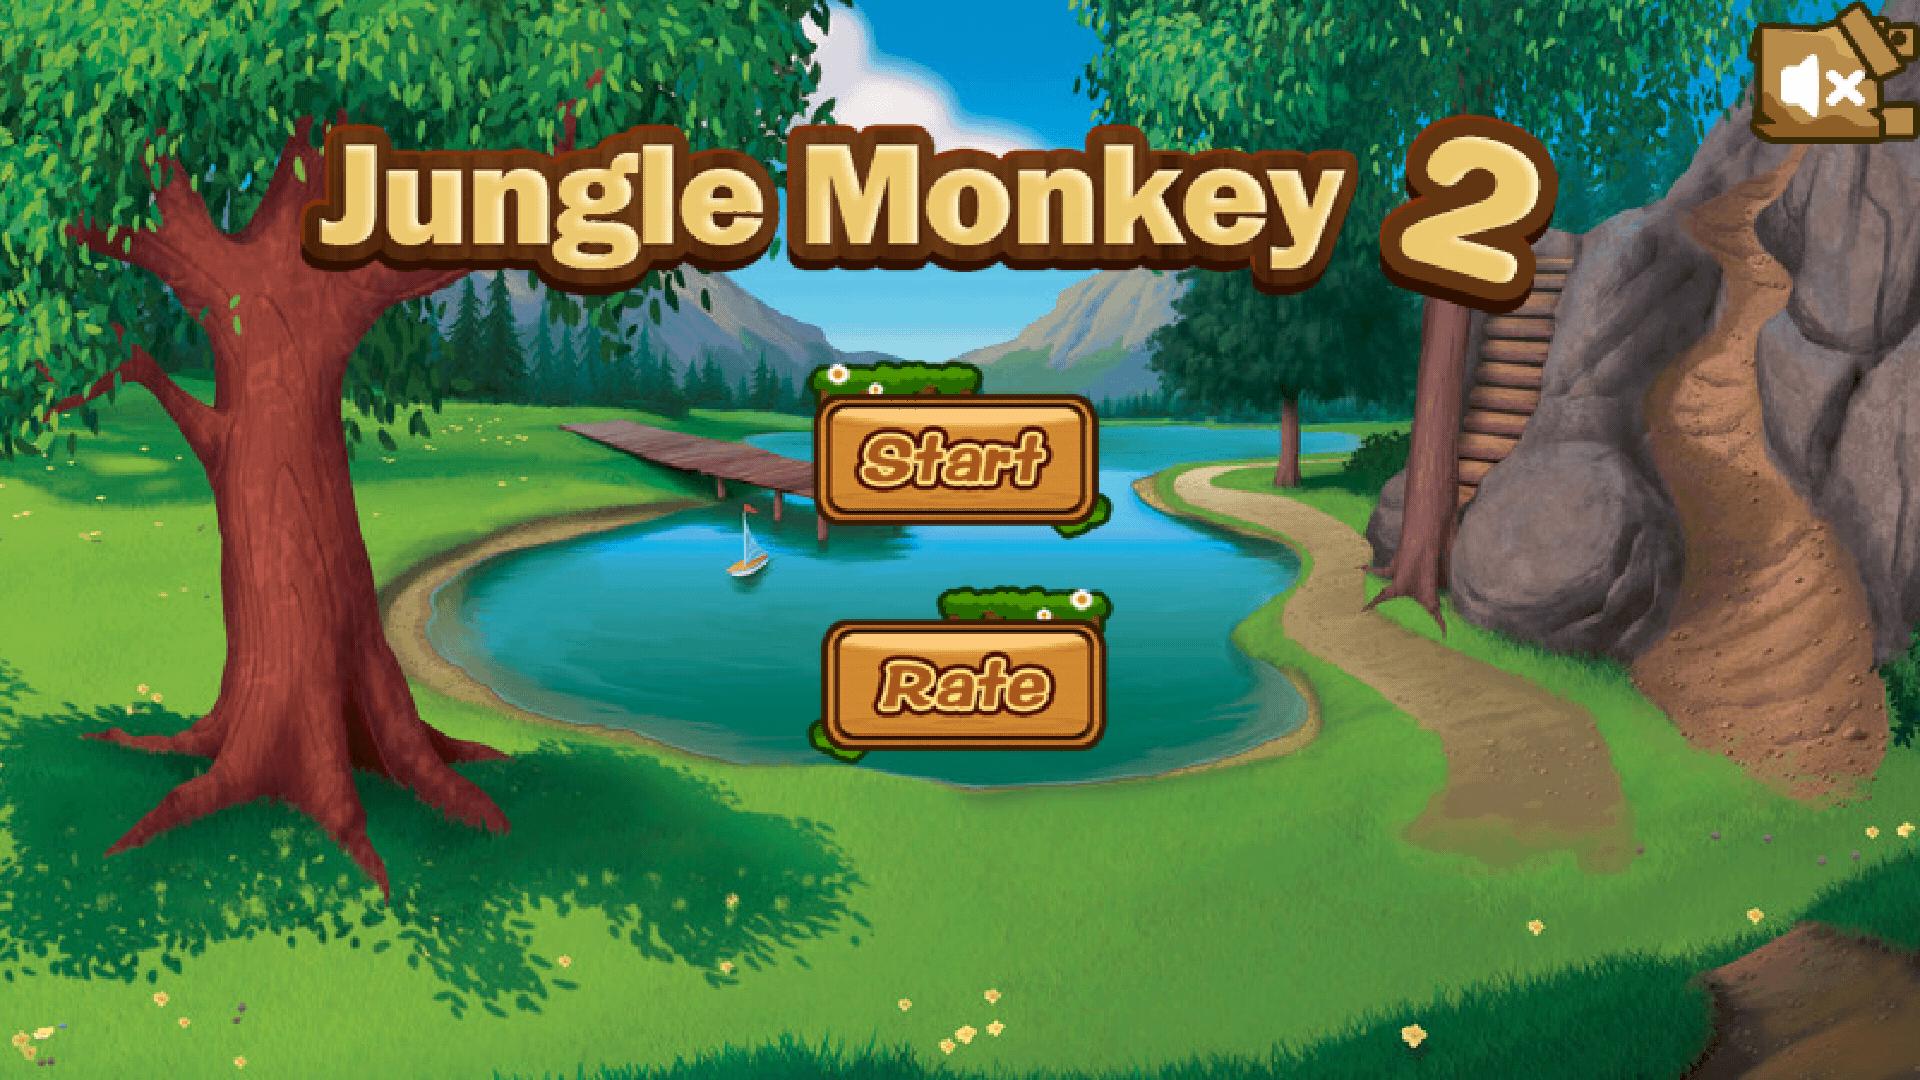 Jungle обезьяна игры. Игра про двух обезьян. Игра про обезьян и шарики. ВР игра про обезьян. Jungle monkeys